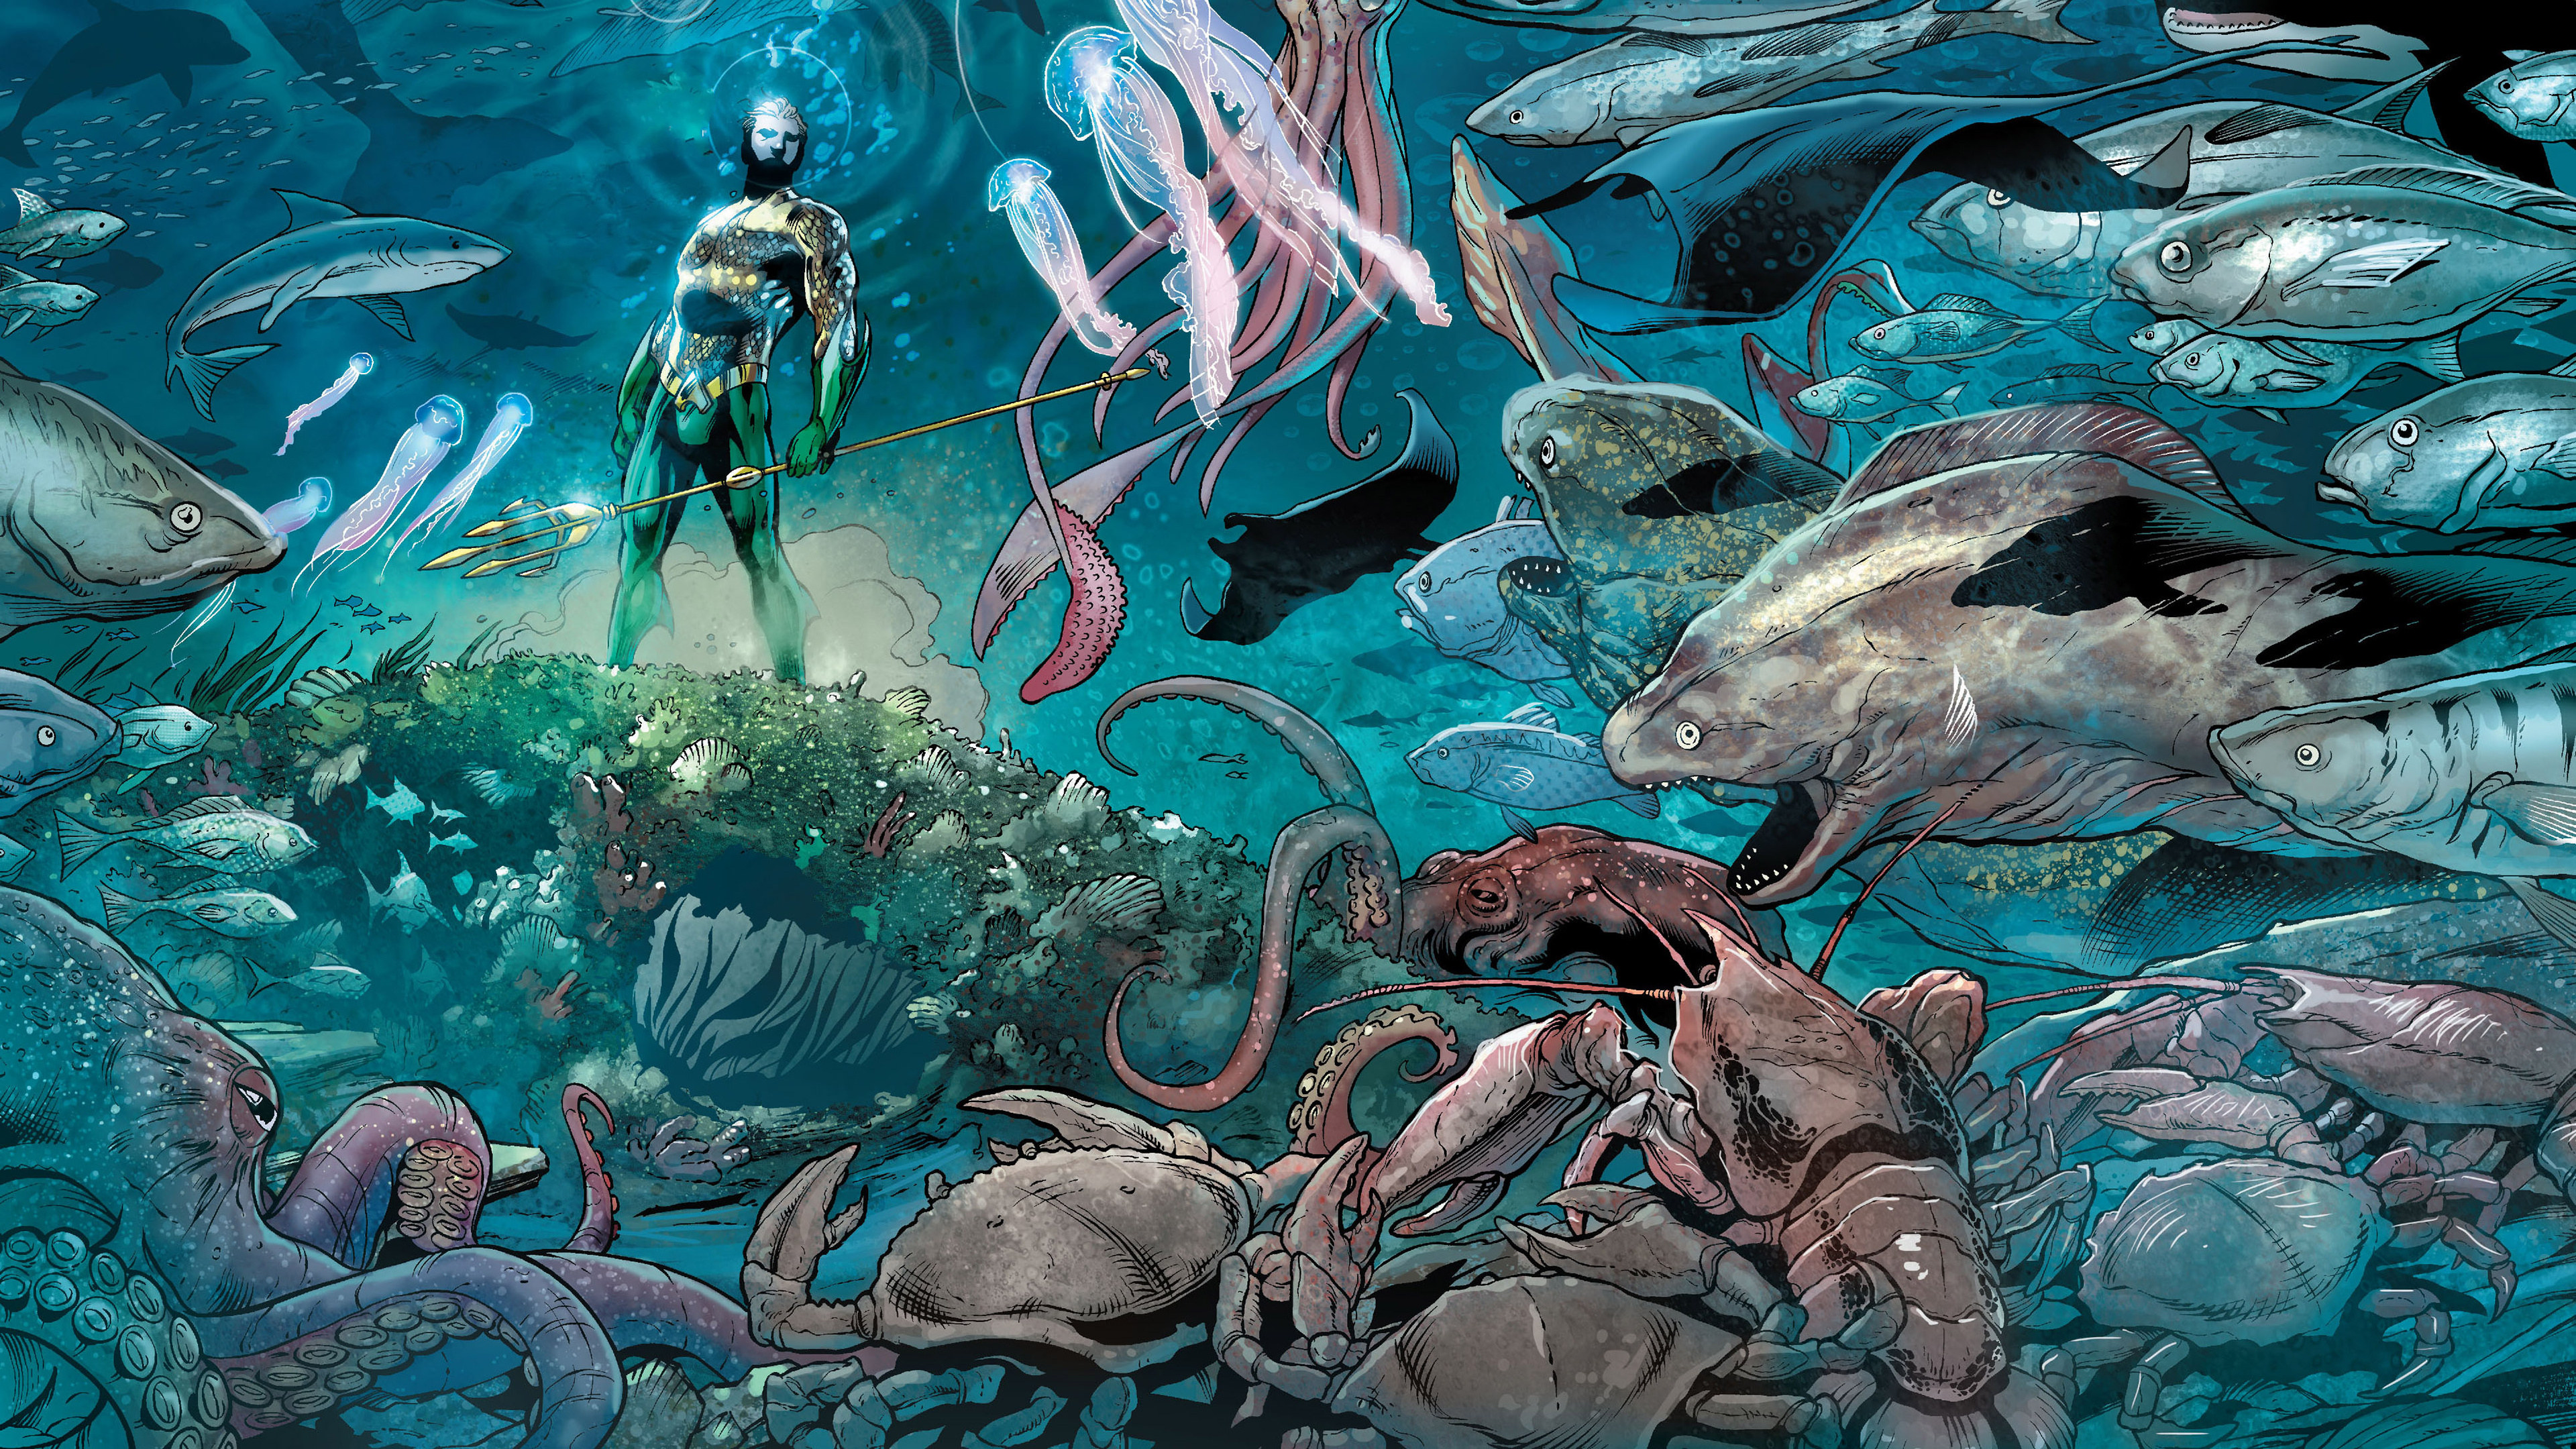 Free download wallpaper Comics, Dc Comics, Aquaman on your PC desktop